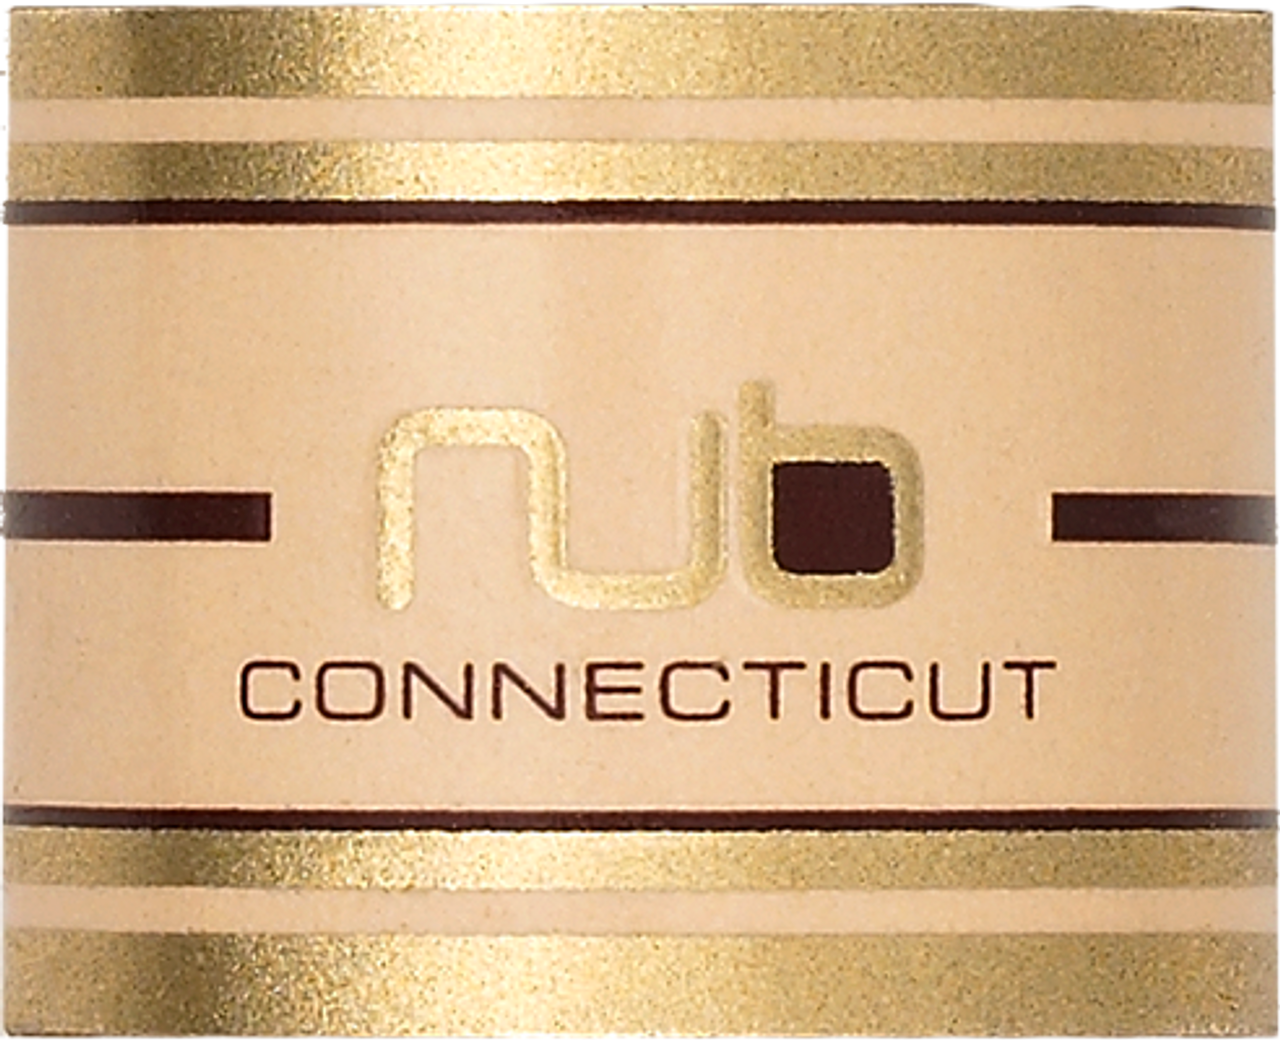 NUB Connecticut 358